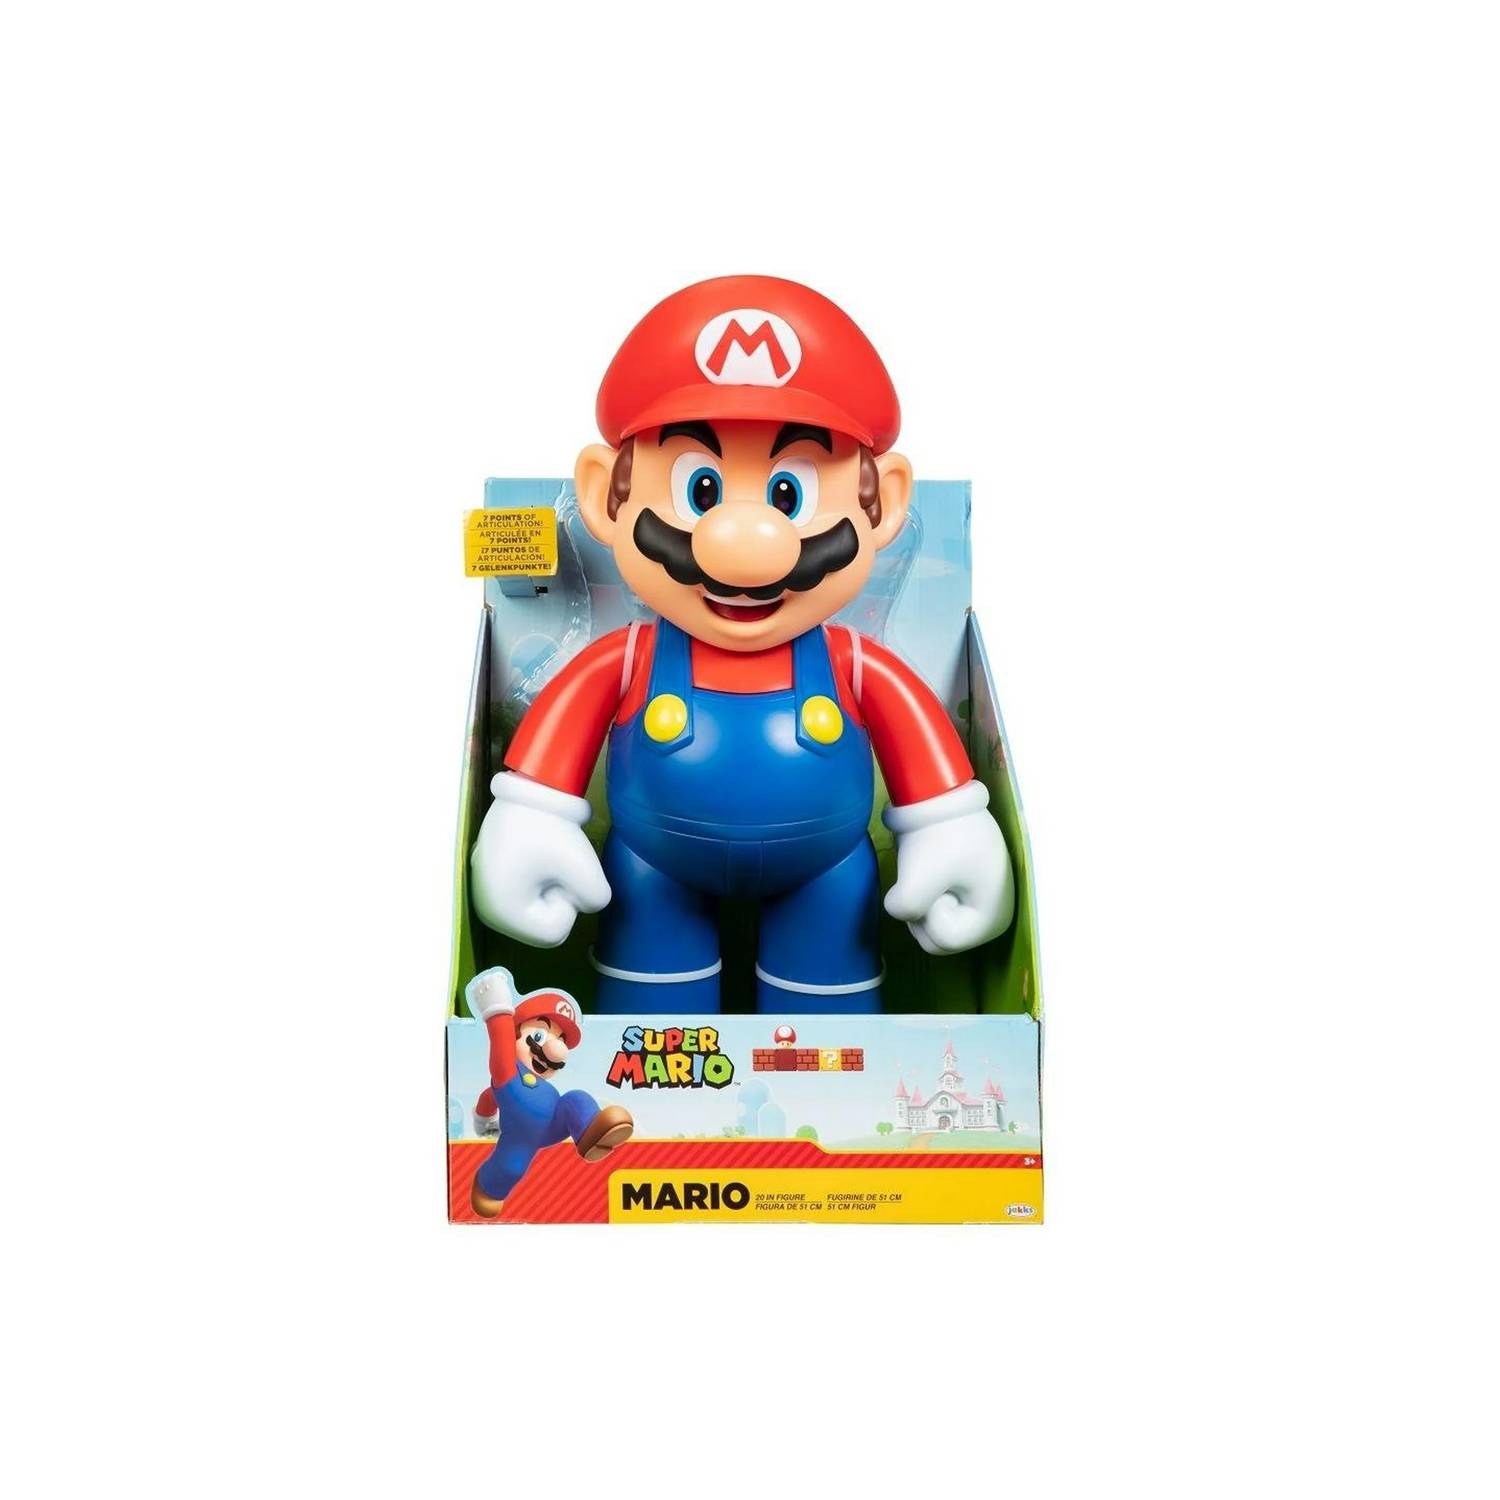 Super Mario - Toy D Coleccion Juguetes y Figuras Lima PERÚ